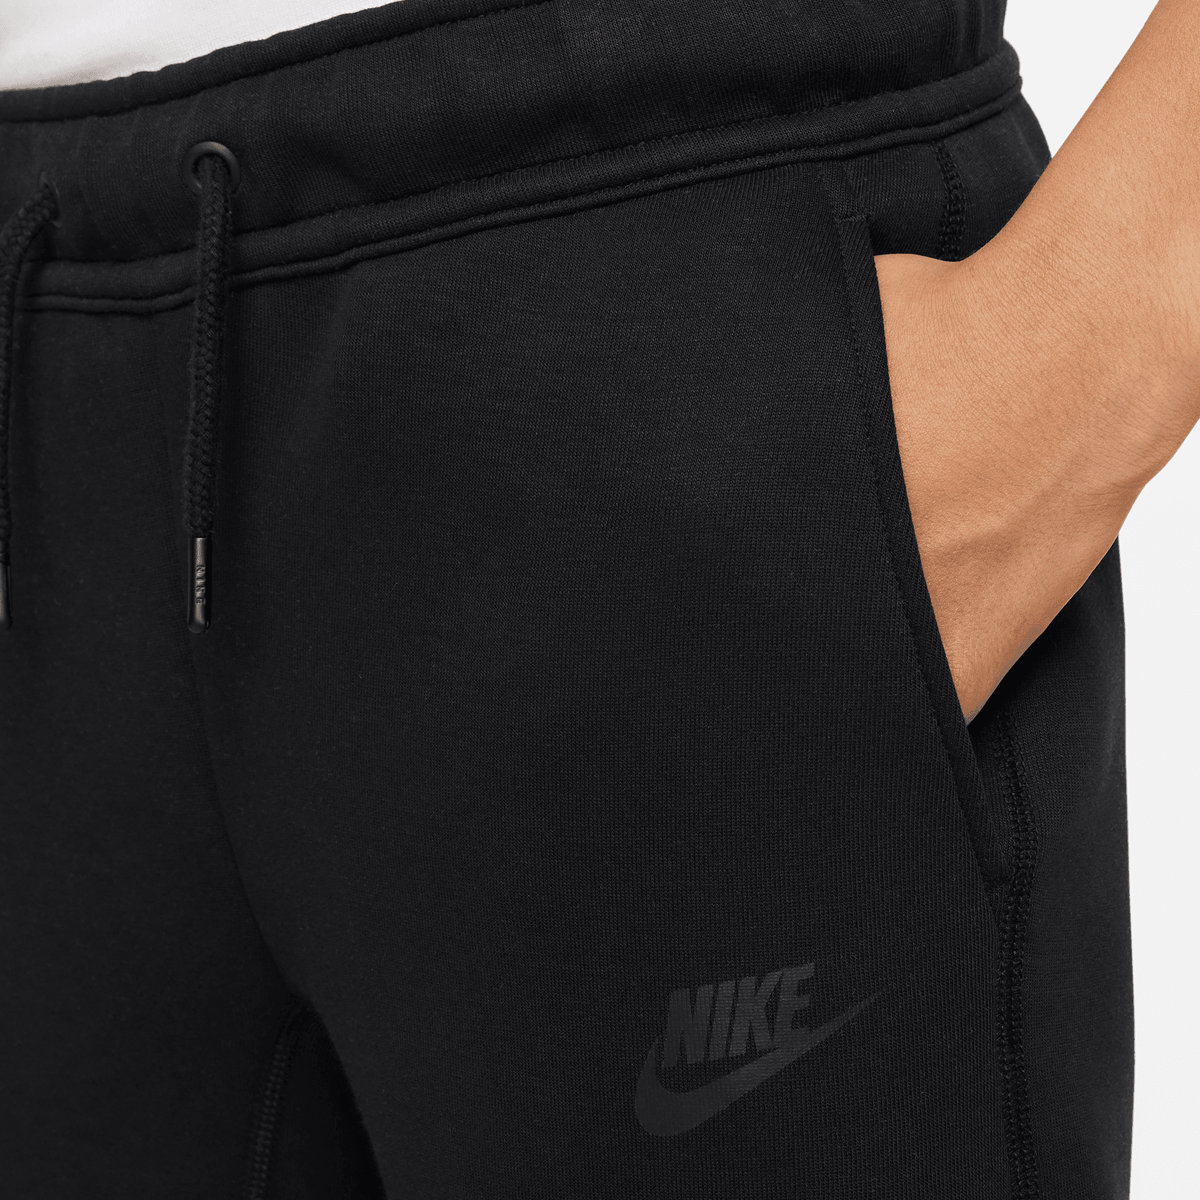 Nike Tech Fleece Pants Trainingsbroeken Kids black black black maat: 137 beschikbare maaten:137 147 170